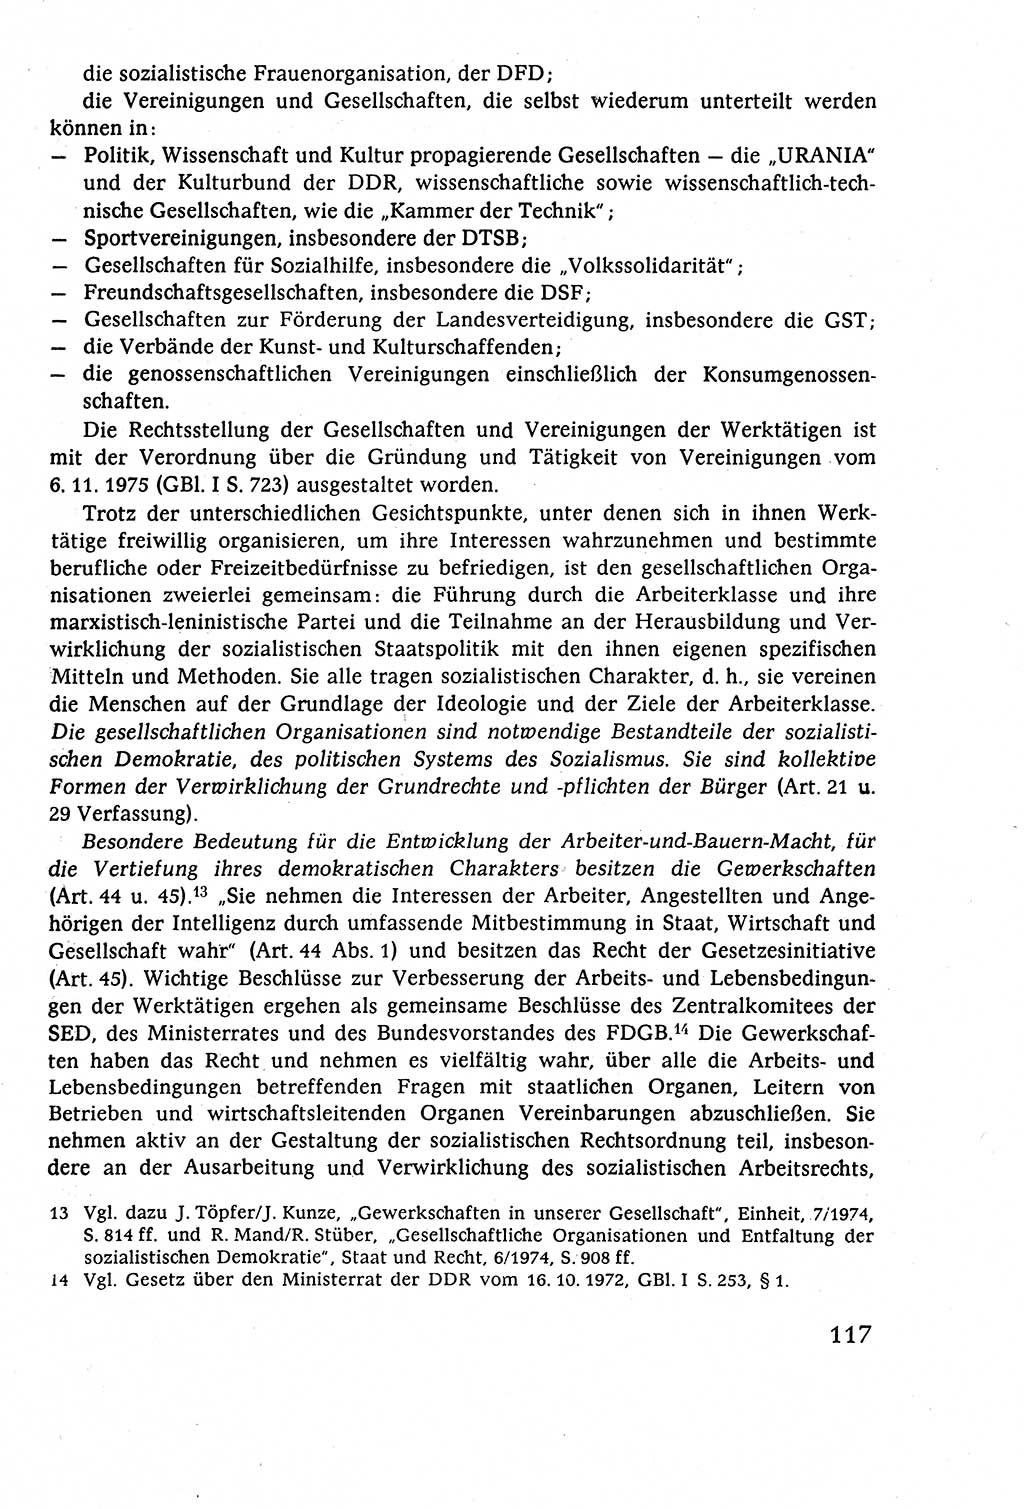 Staatsrecht der DDR (Deutsche Demokratische Republik), Lehrbuch 1977, Seite 117 (St.-R. DDR Lb. 1977, S. 117)